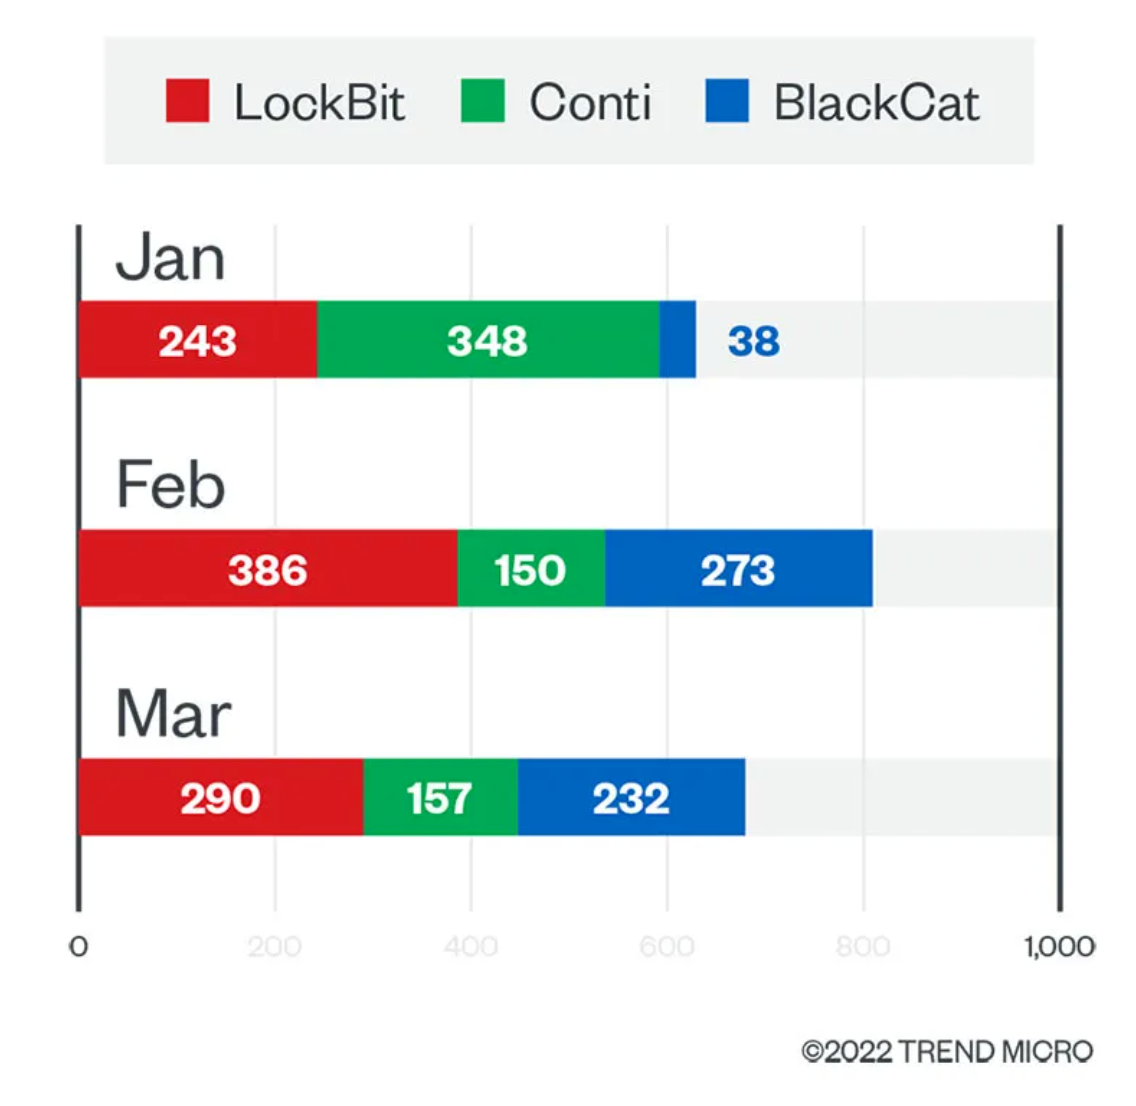 圖 3：電腦上偵測的 LockBit、Conti 和 BlackCat 勒索病毒檔案數量逐月比較 (2022 年第 1 季)。 資料來源：趨勢科技 Smart Protection Network™